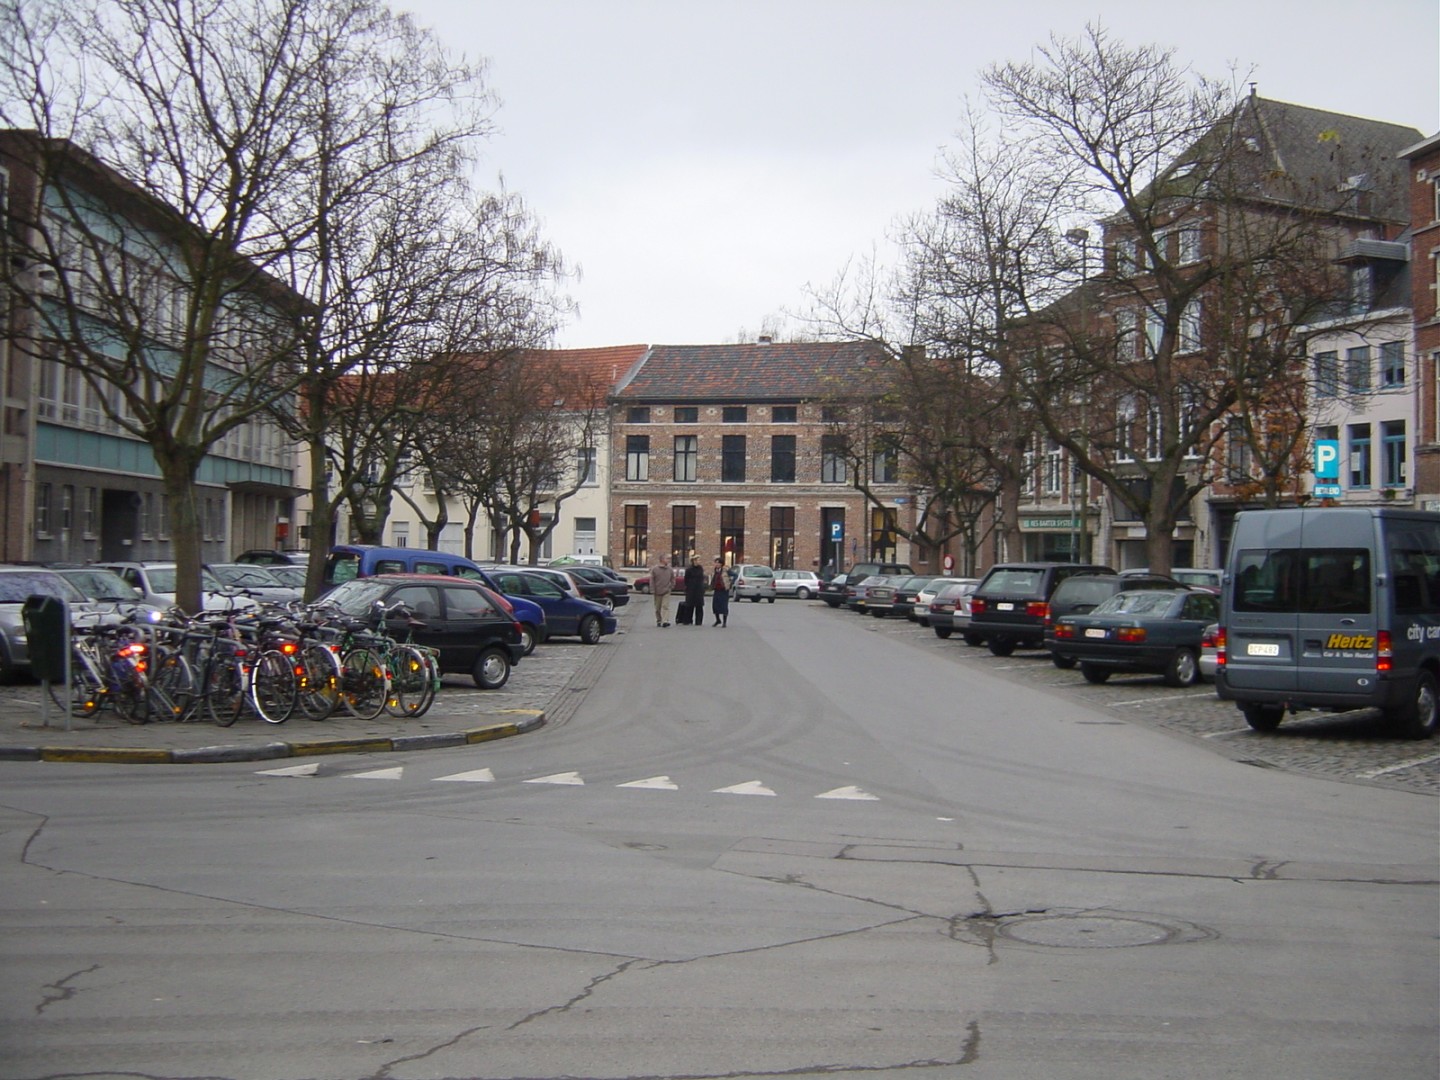 Leuven kan beginnen aan heraanleg omgeving Vismarkt1